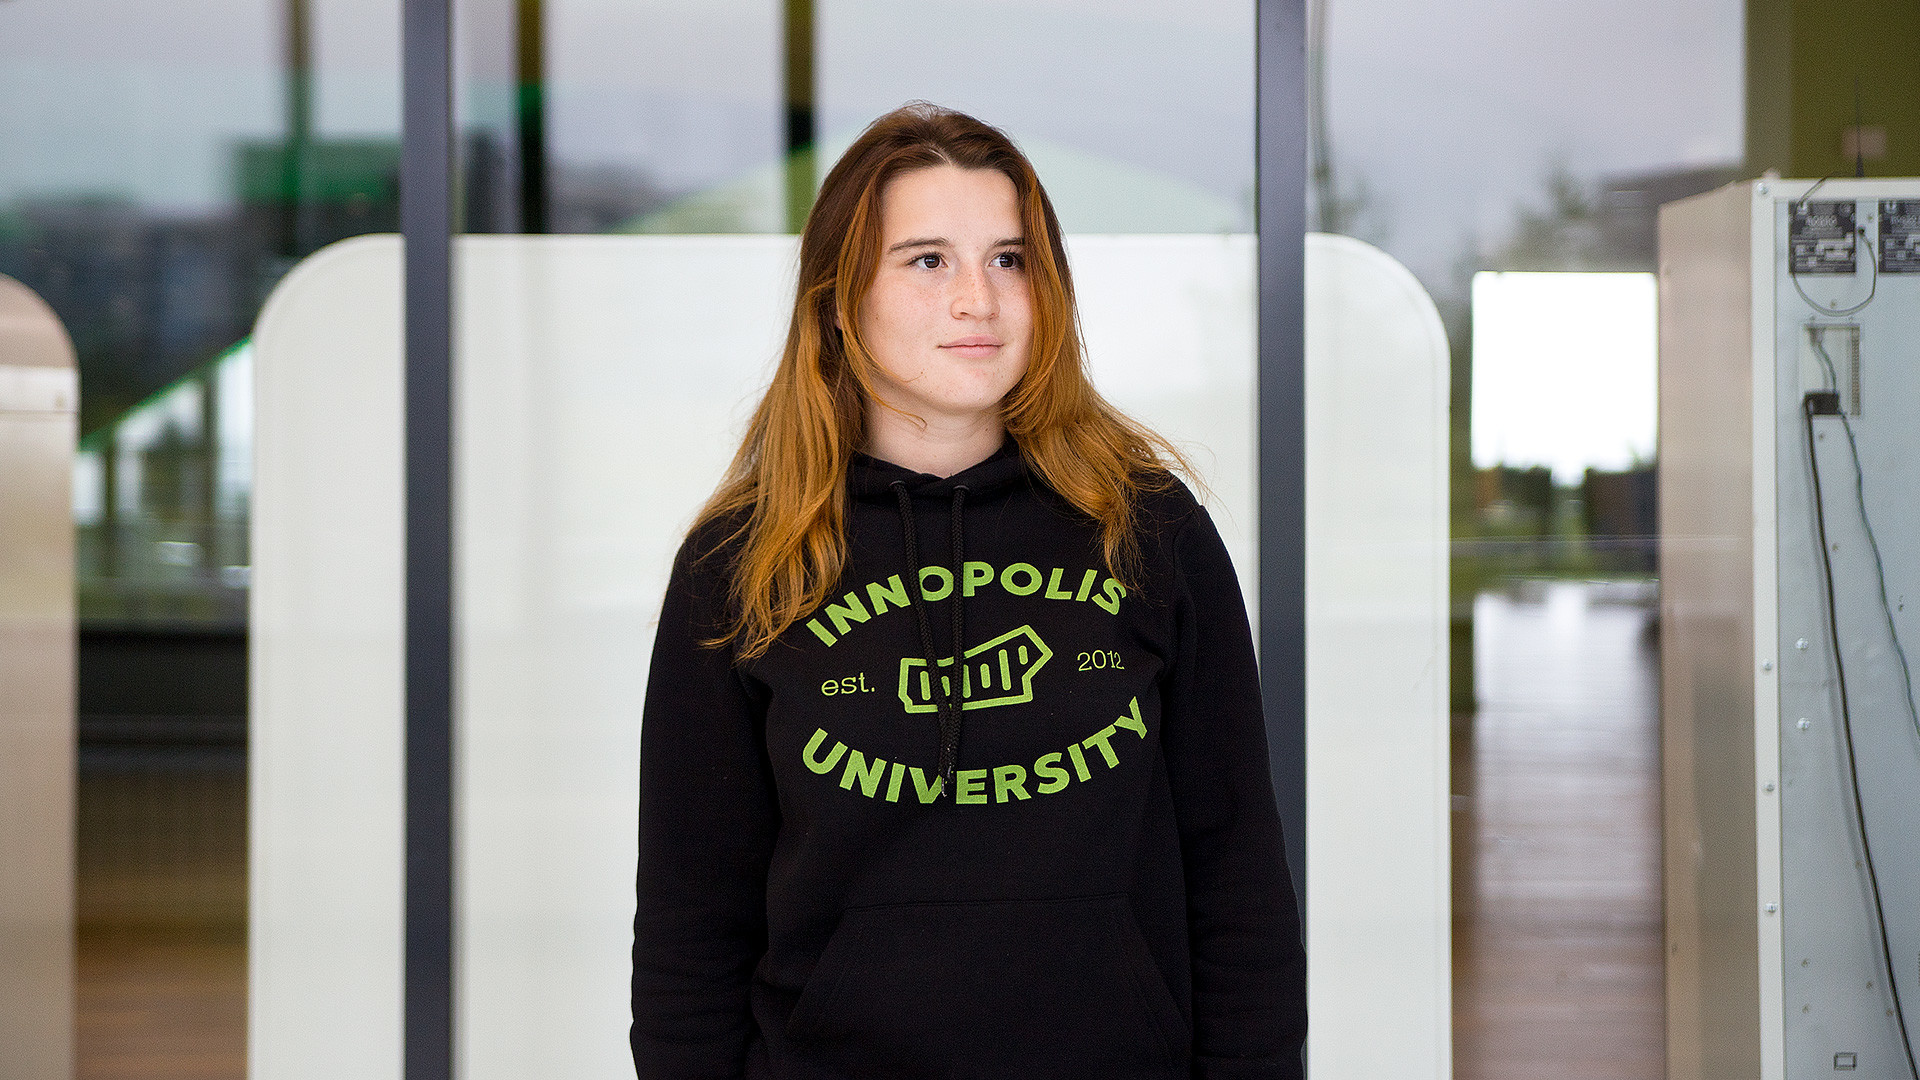 Екатерина Узбекова учится в Университете Иннополис и хочет разрабатывать приложения для iOS.